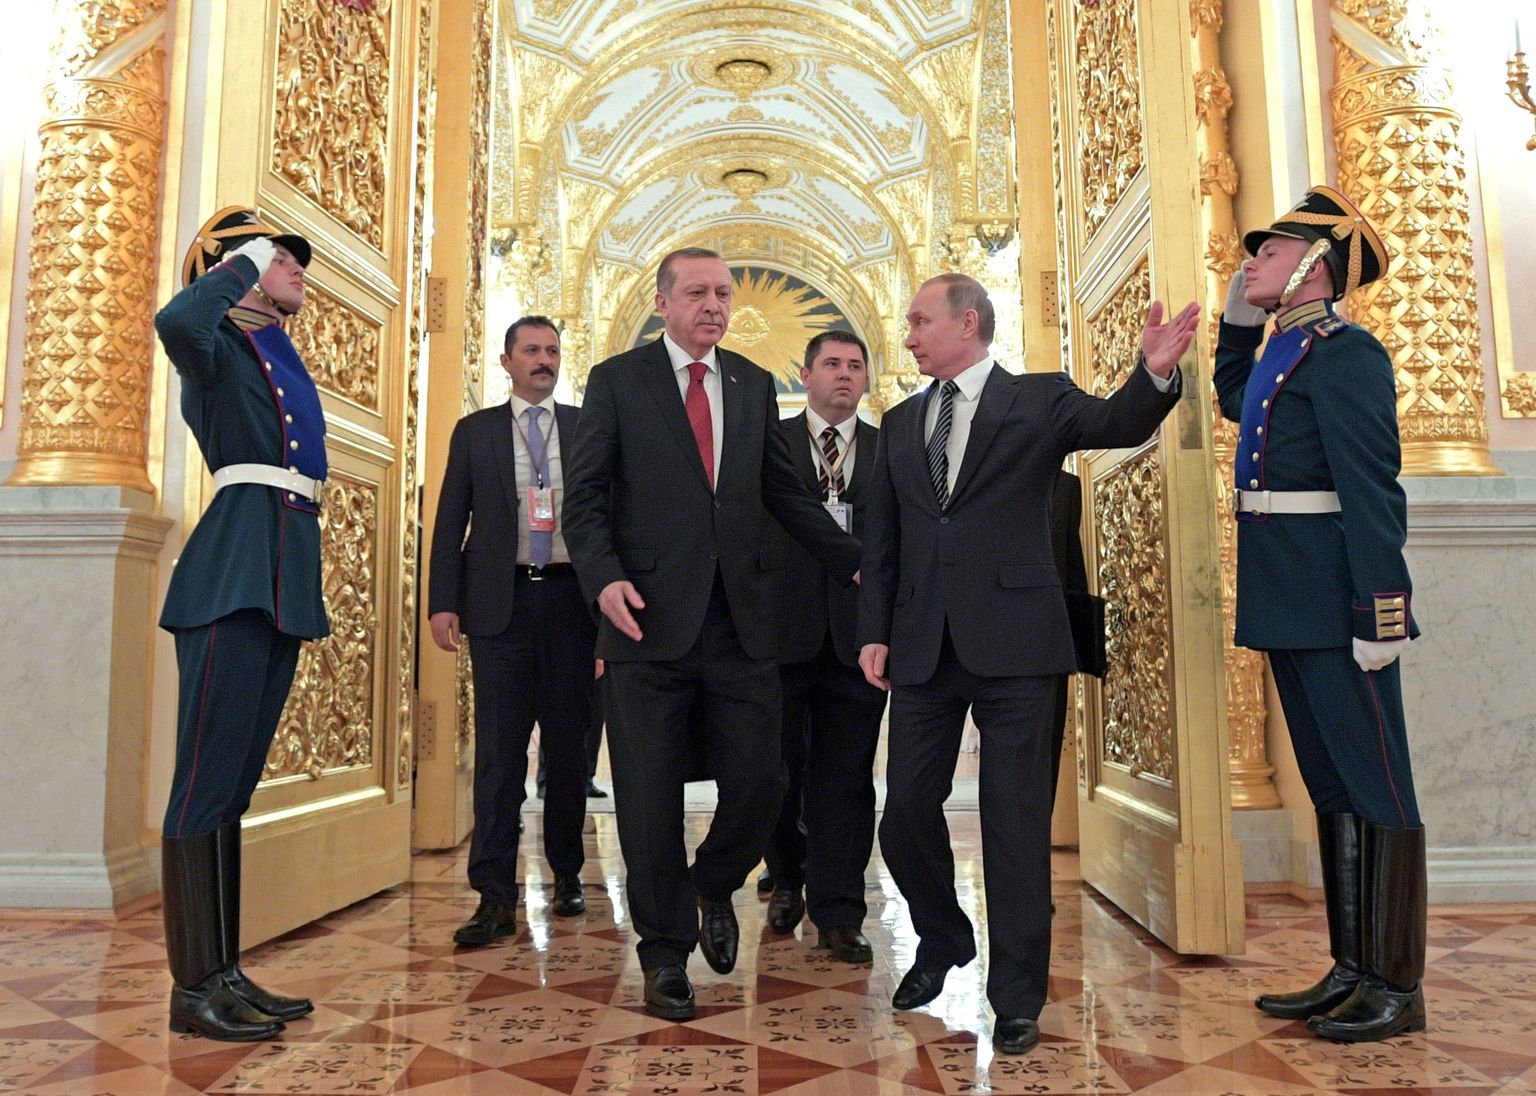 Vladimir Putin ja Recep Tayyip Erdogan märtsikuisel kohtumisel.